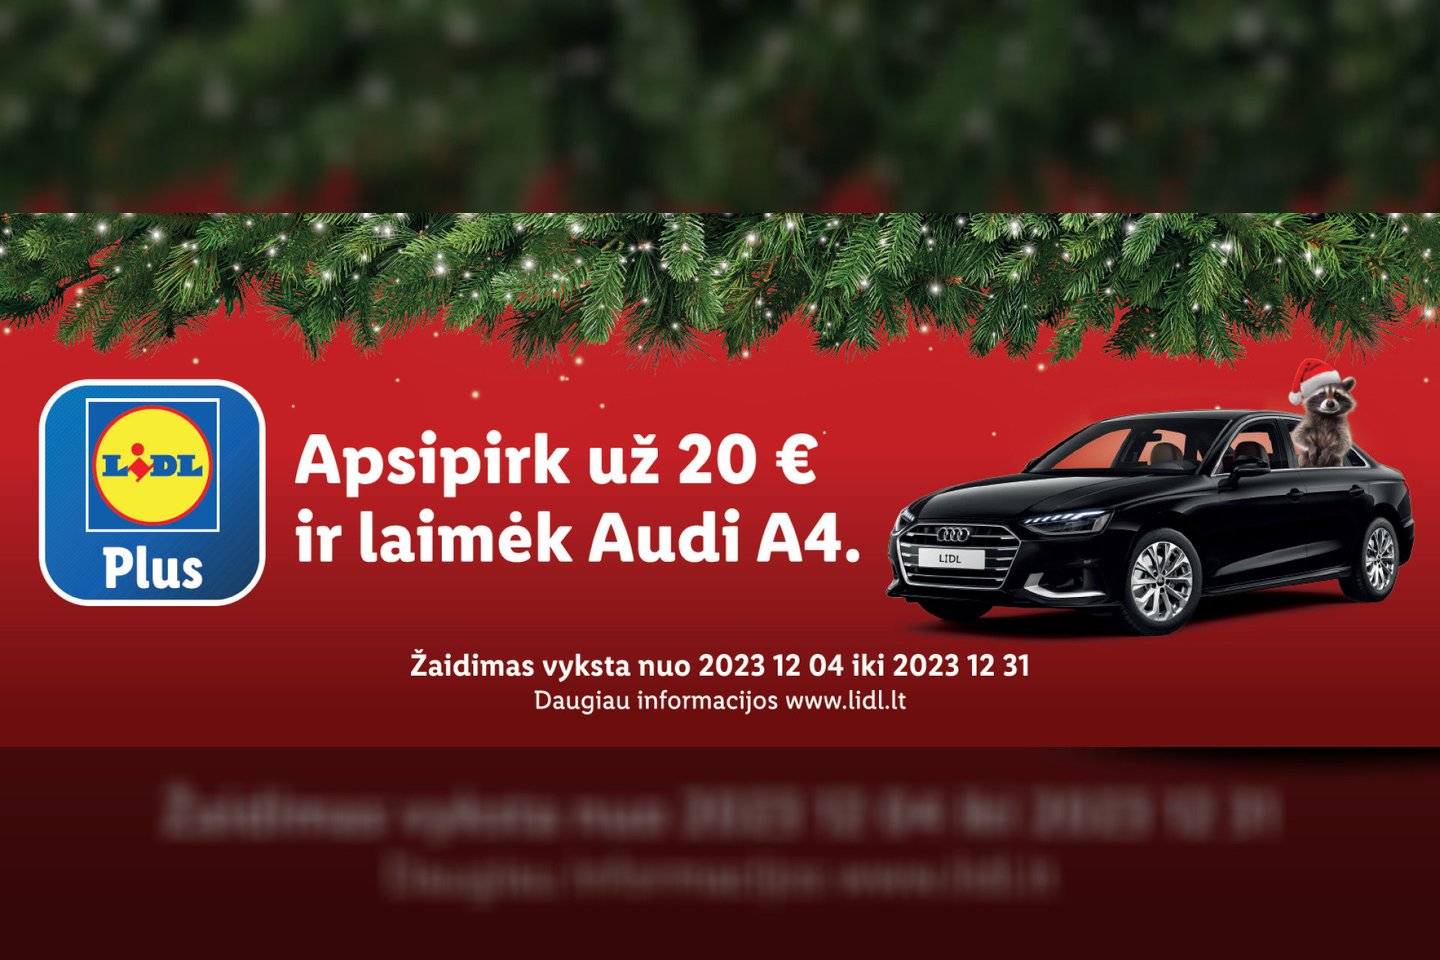 Kiekvienas, bet kurioje „Lidl“ parduotuvėje apsipirkęs bent už 20 Eur, kasoje nuskenavęs „Lidl Plus“ programėlę ir aktyvinęs žaidimo bilietą, pretenduos laimėti naujutėlaitį automobilį – „Audi A4“.